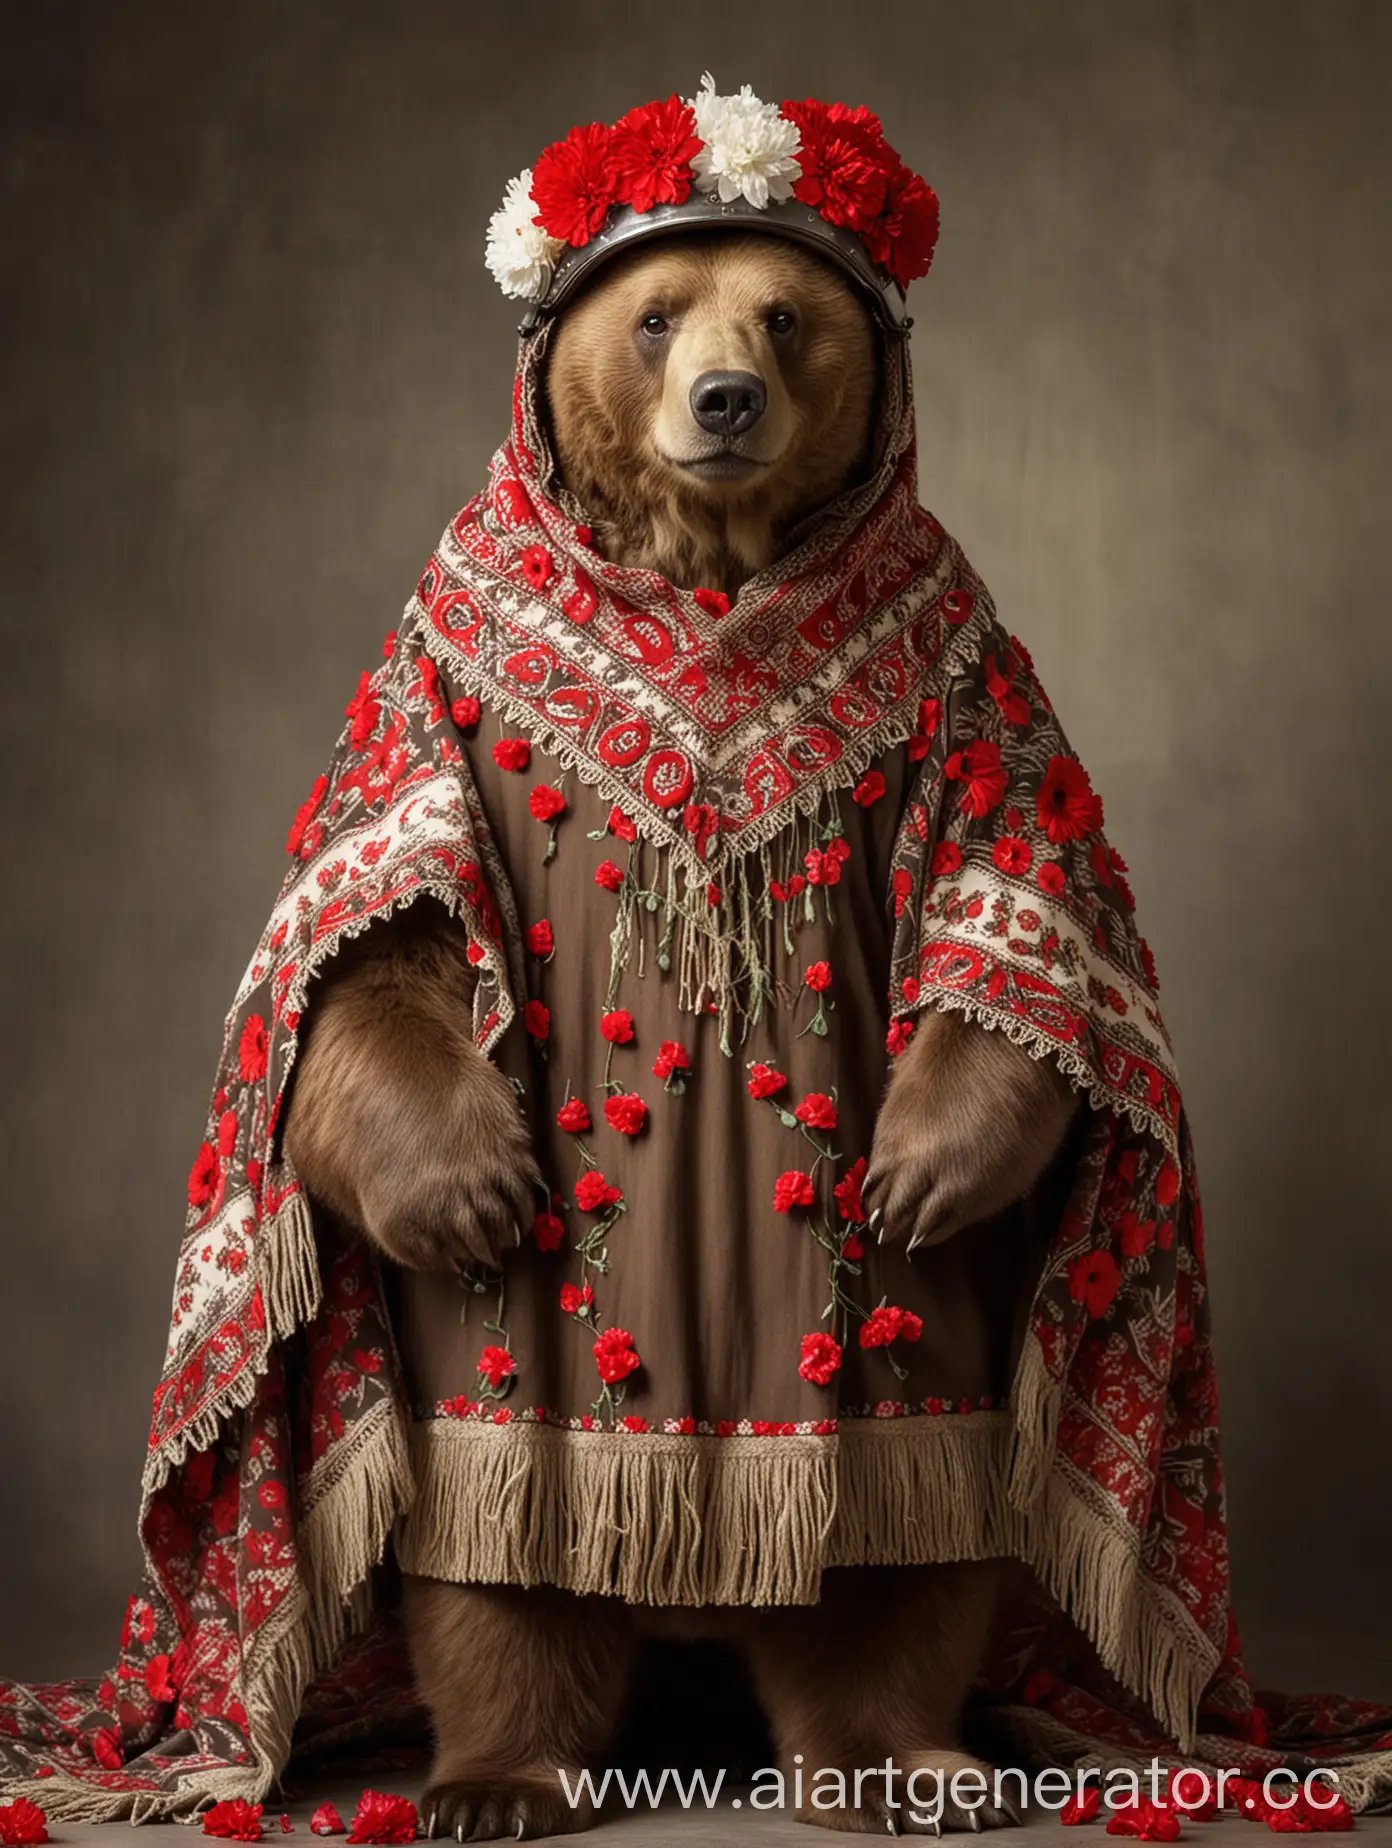  бурый медведь в русском платке с военным шлемом на голове, красные гвоздики в лапах